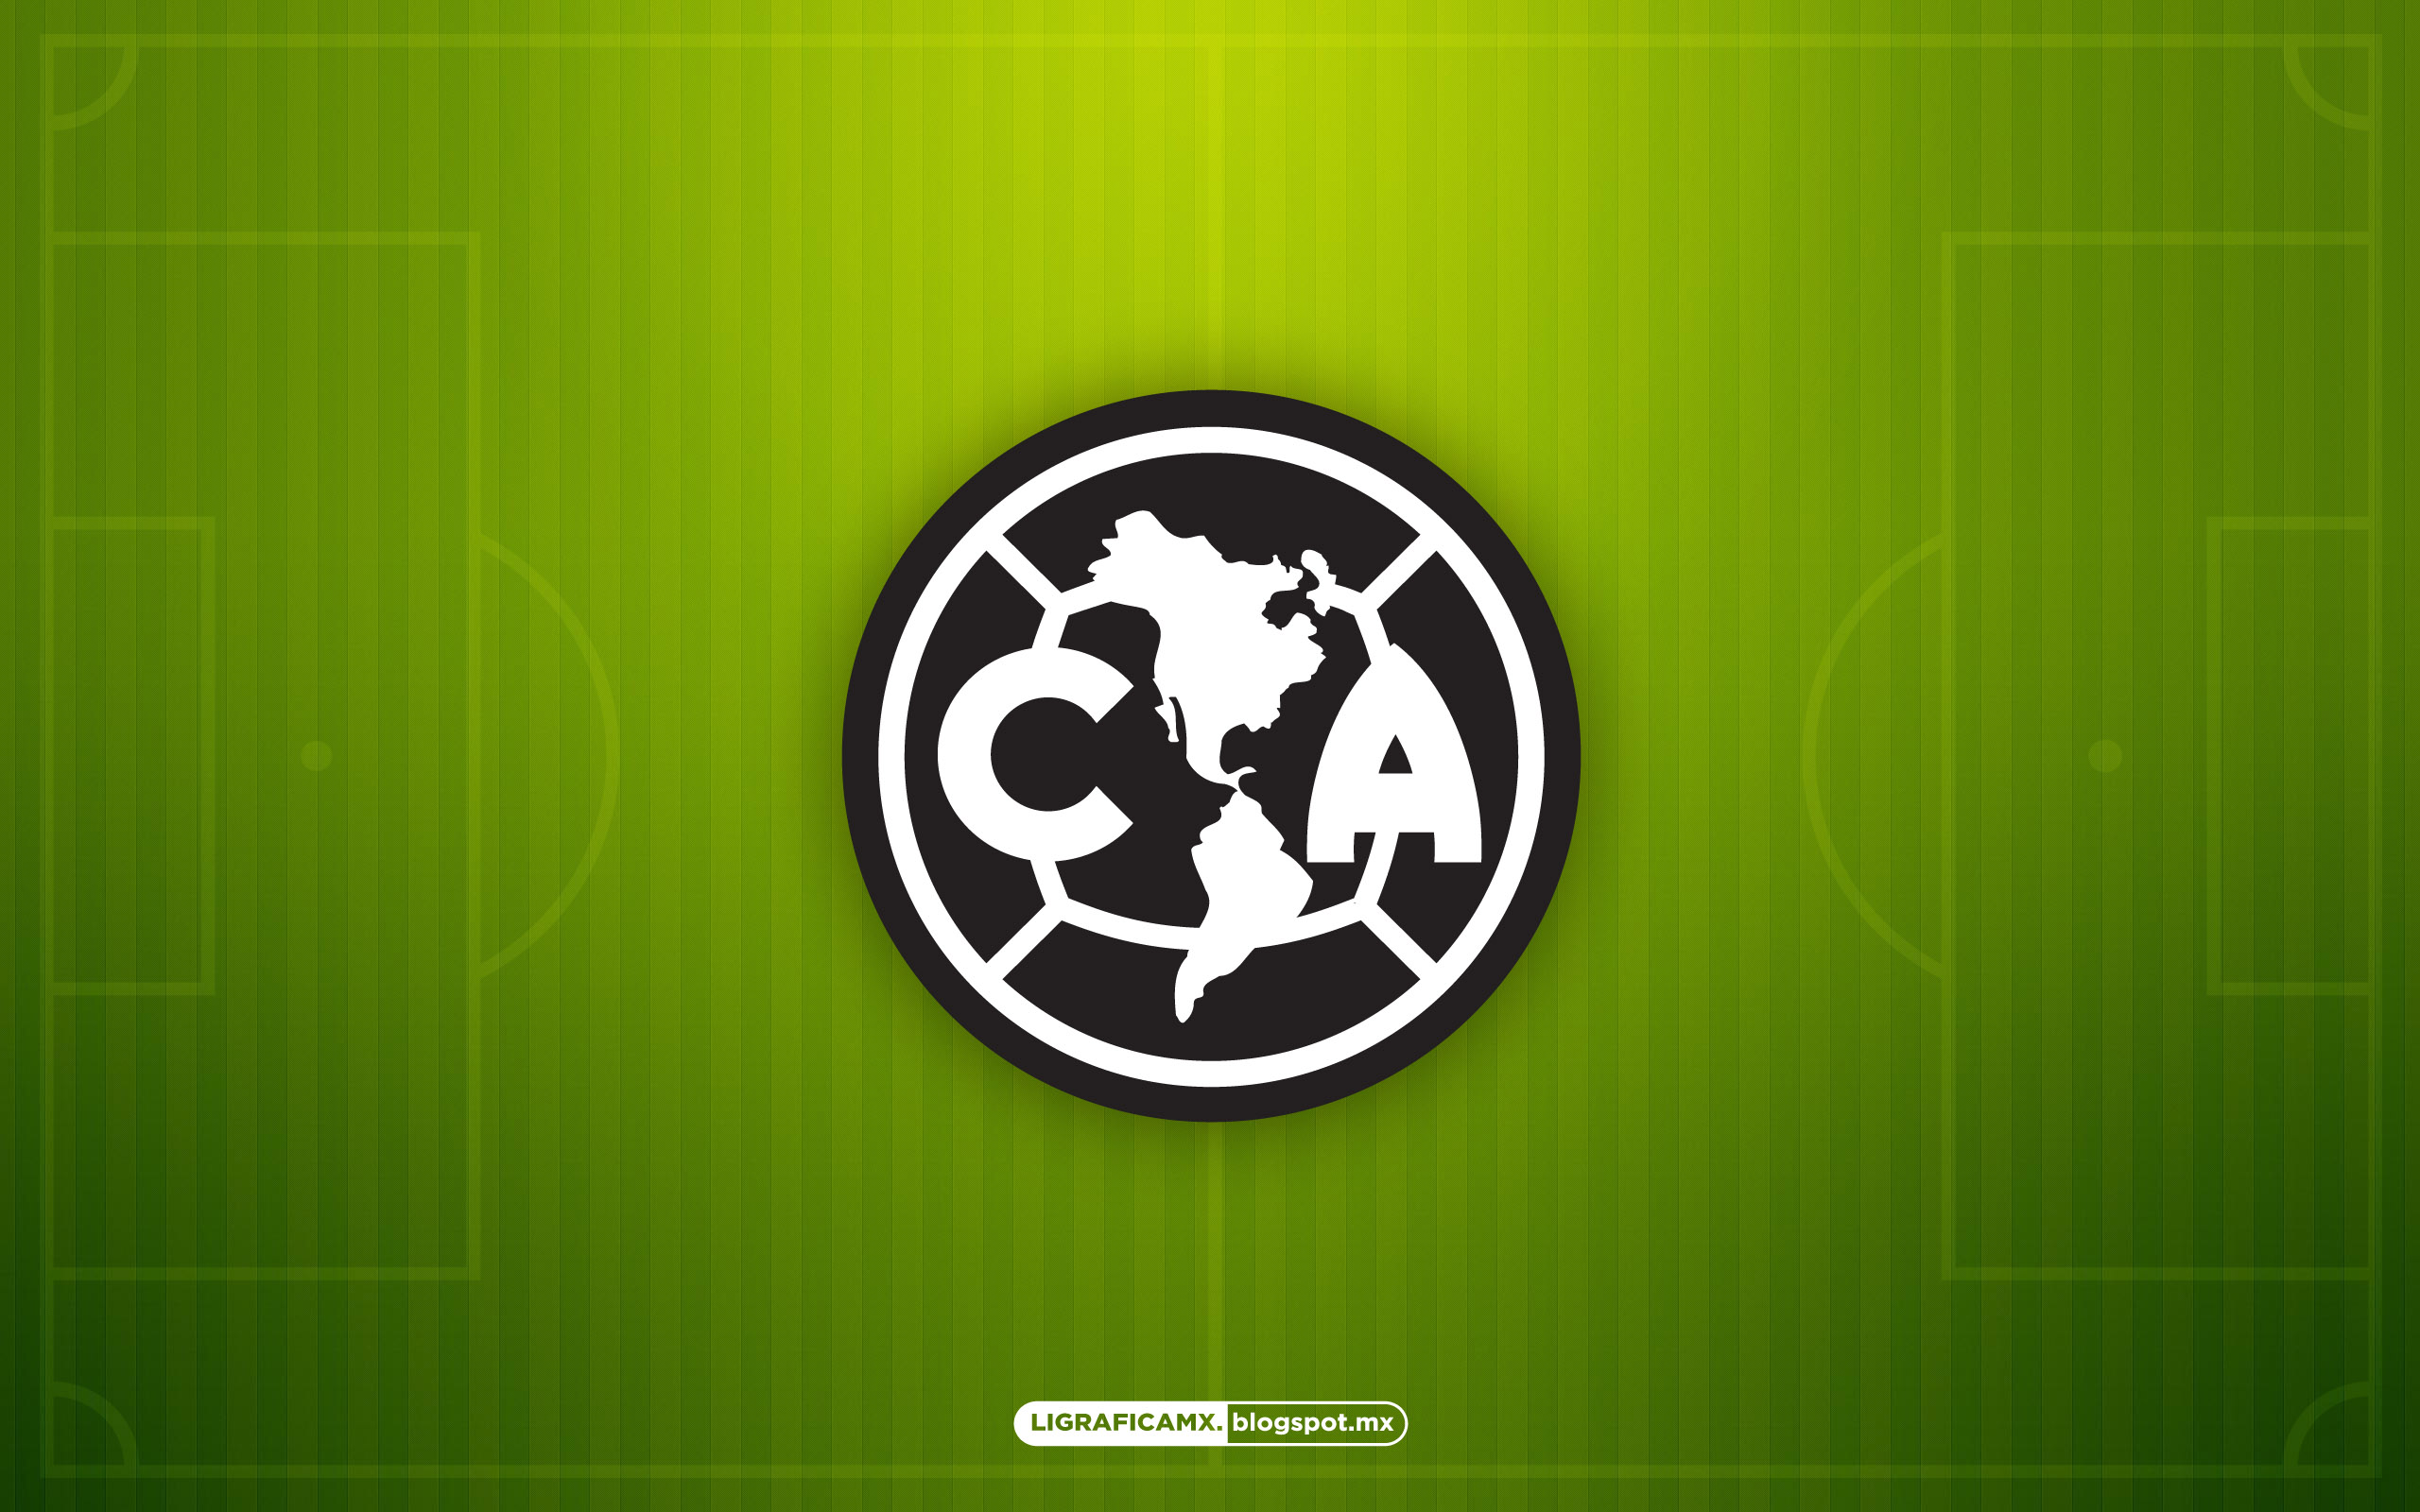 club america wallpaper,green,font,logo,emblem,graphics